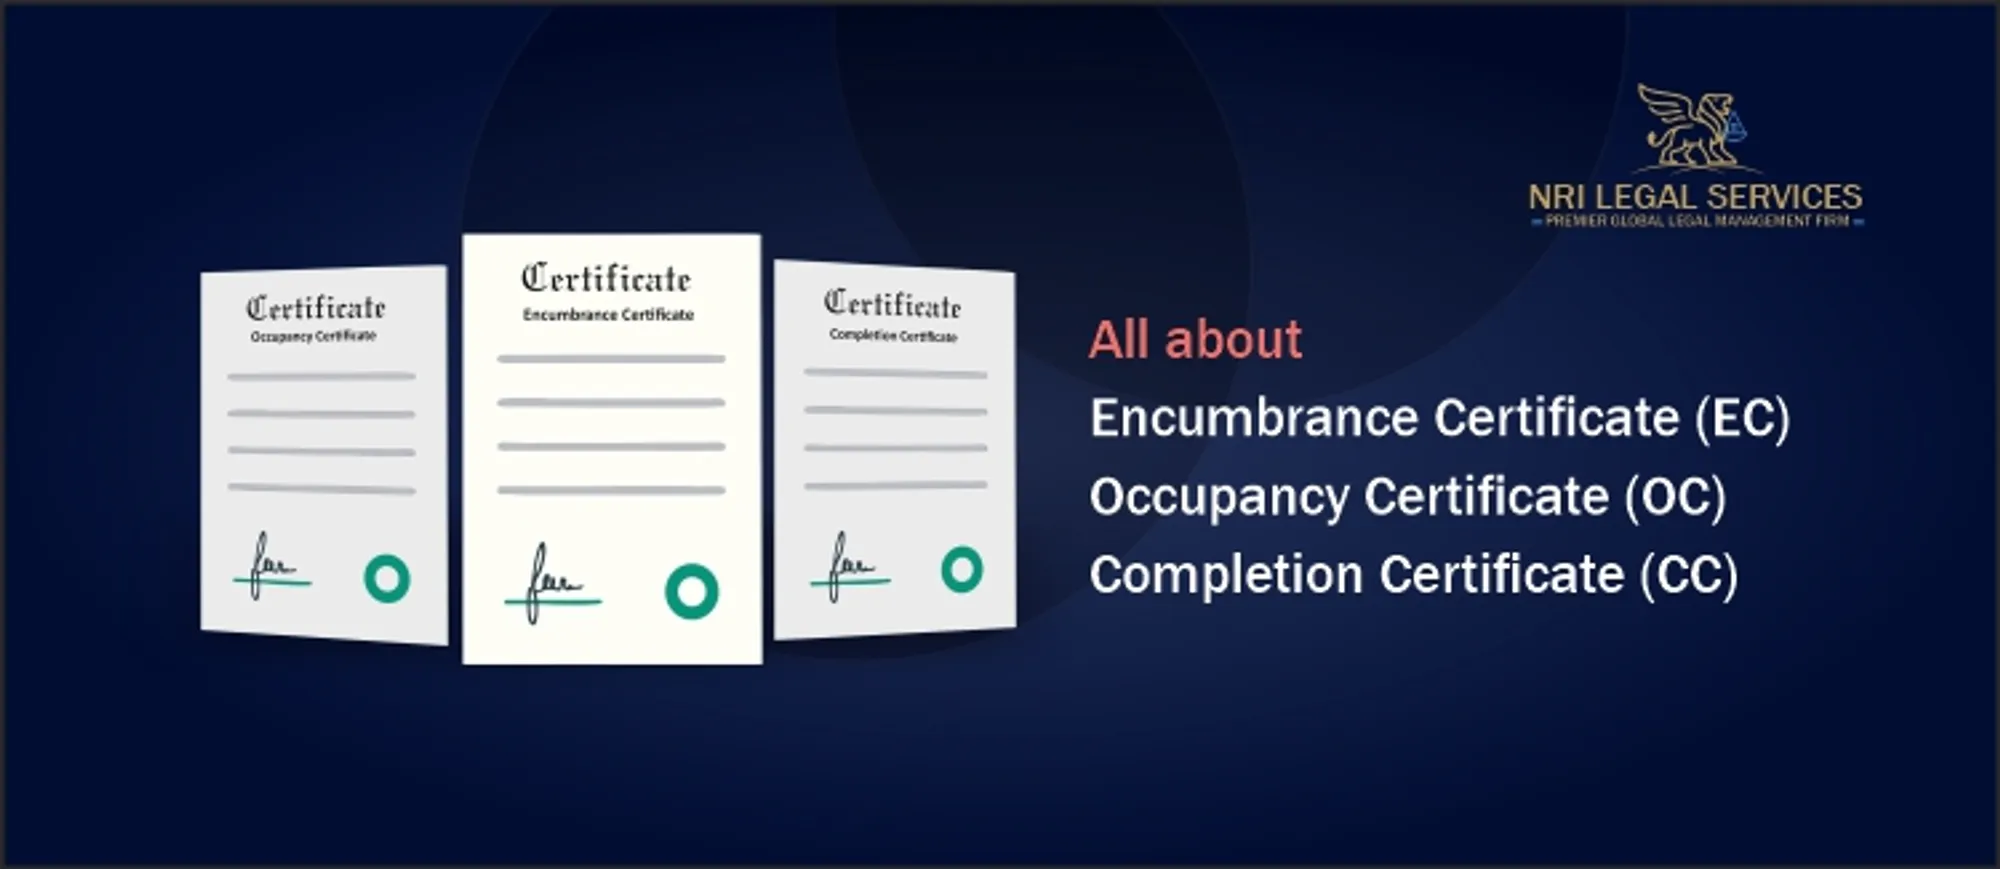 All about an Encumbrance Certificate (EC), an Occupancy Certificate (OC) and a Completion Certificate (CC)